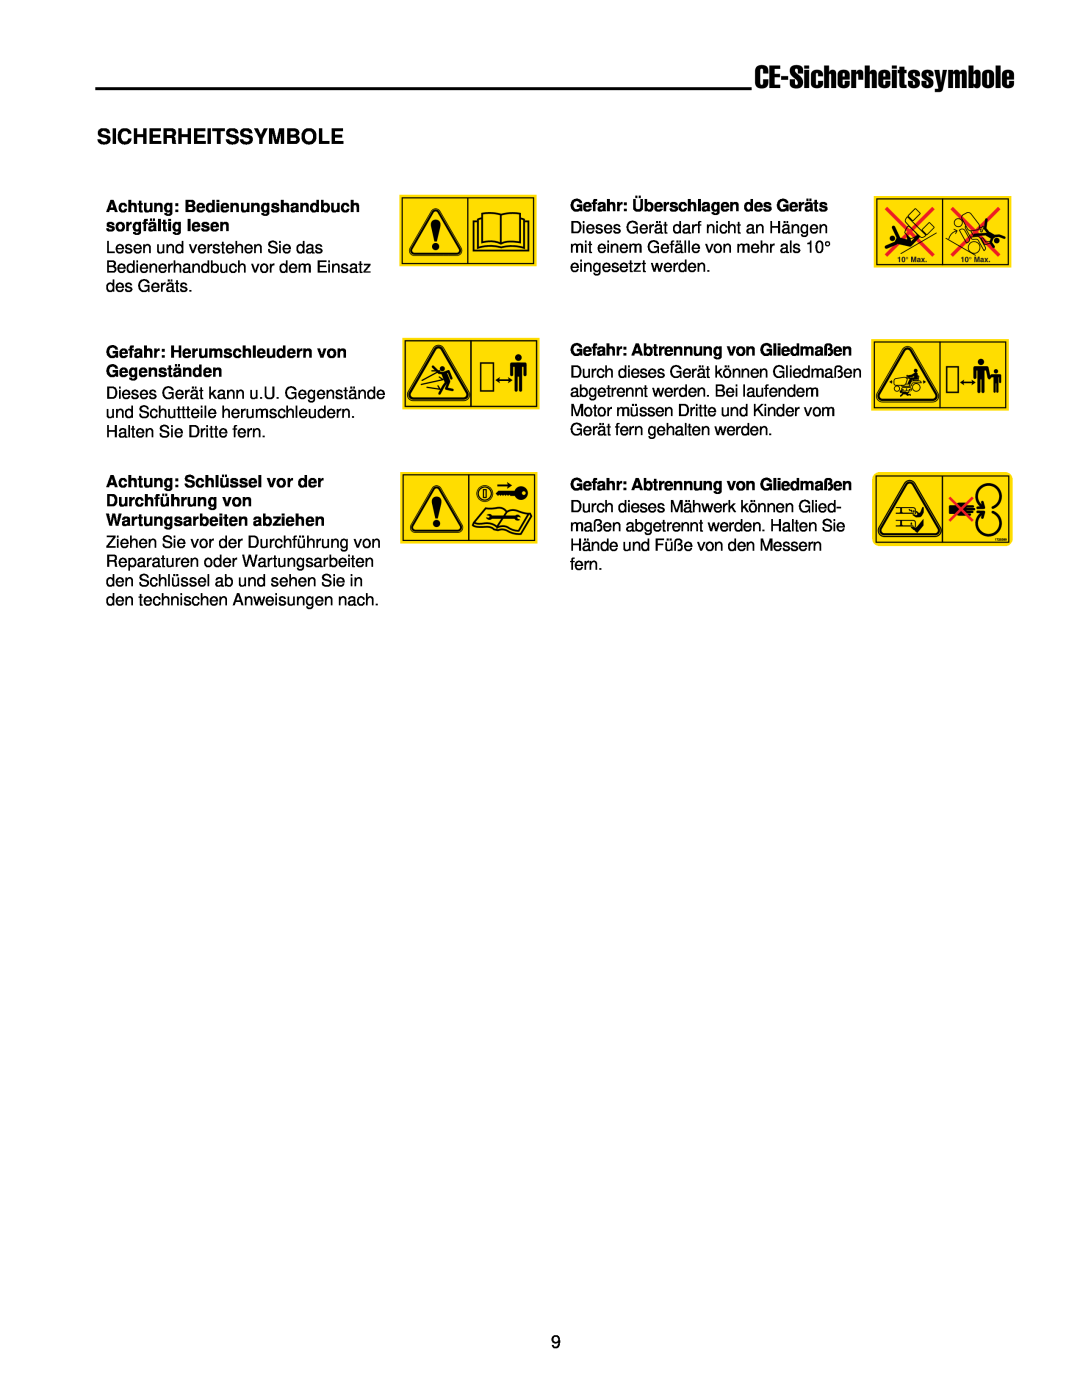 Simplicity 300 manual CE-Sicherheitssymbole, Gefahr Herumschleudern von Gegenständen, Gefahr Überschlagen des Geräts 